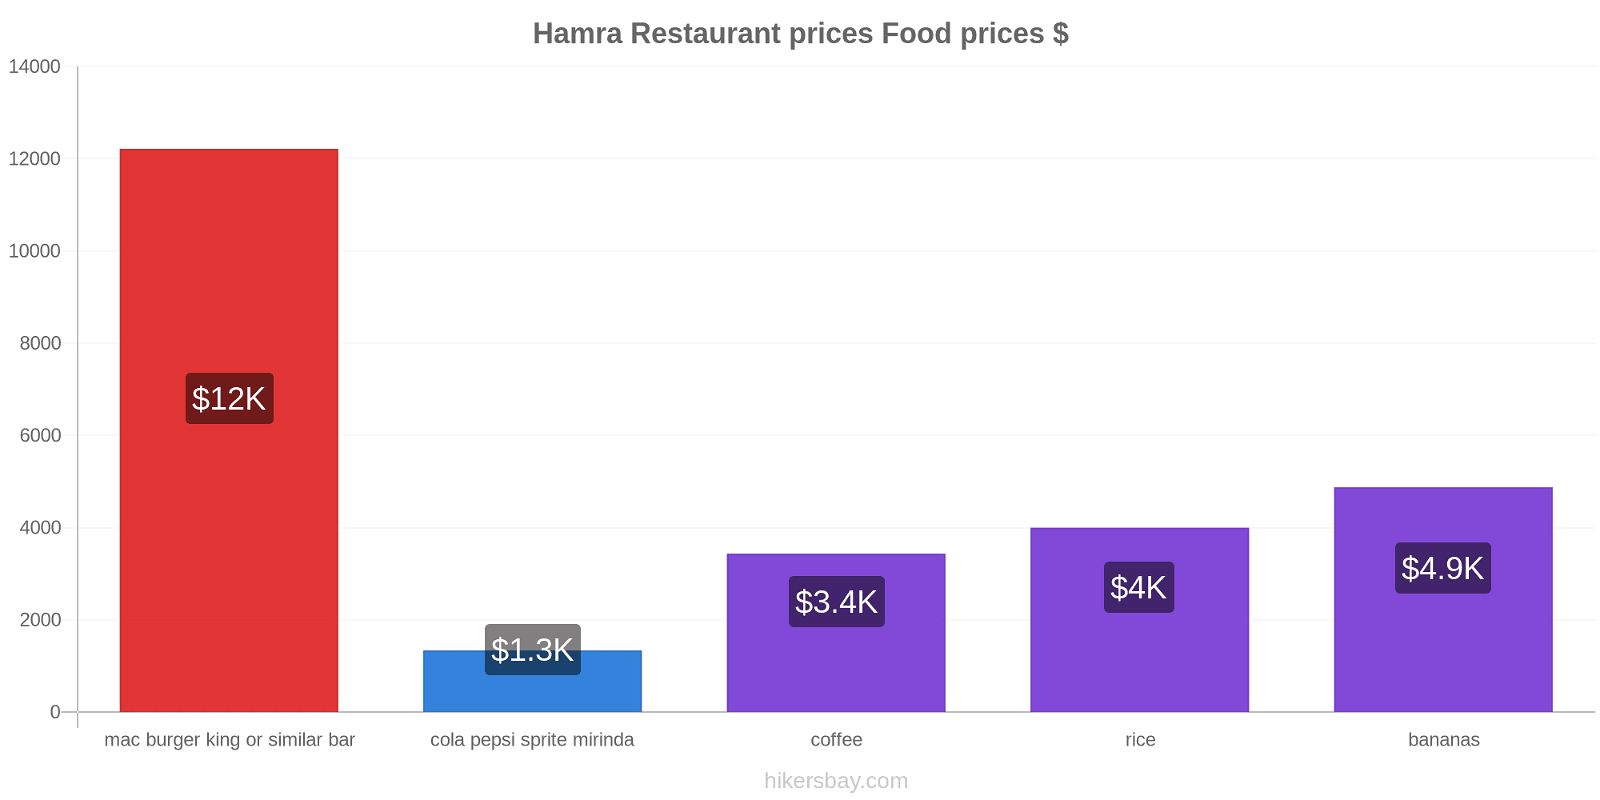 Hamra price changes hikersbay.com